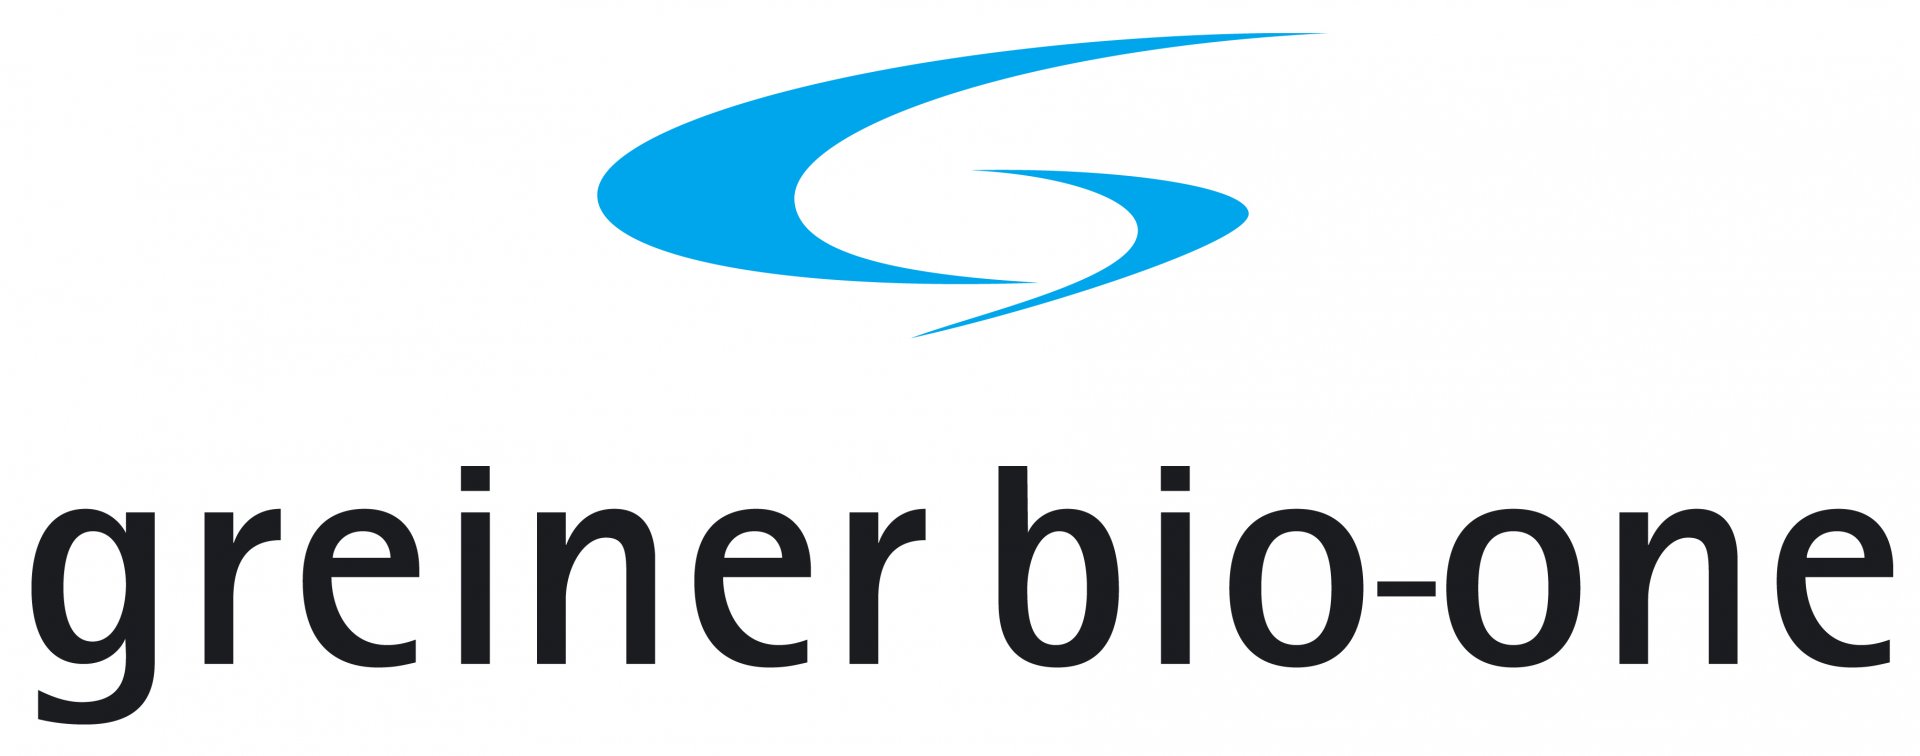 Greiner Bio-One : Medical Device